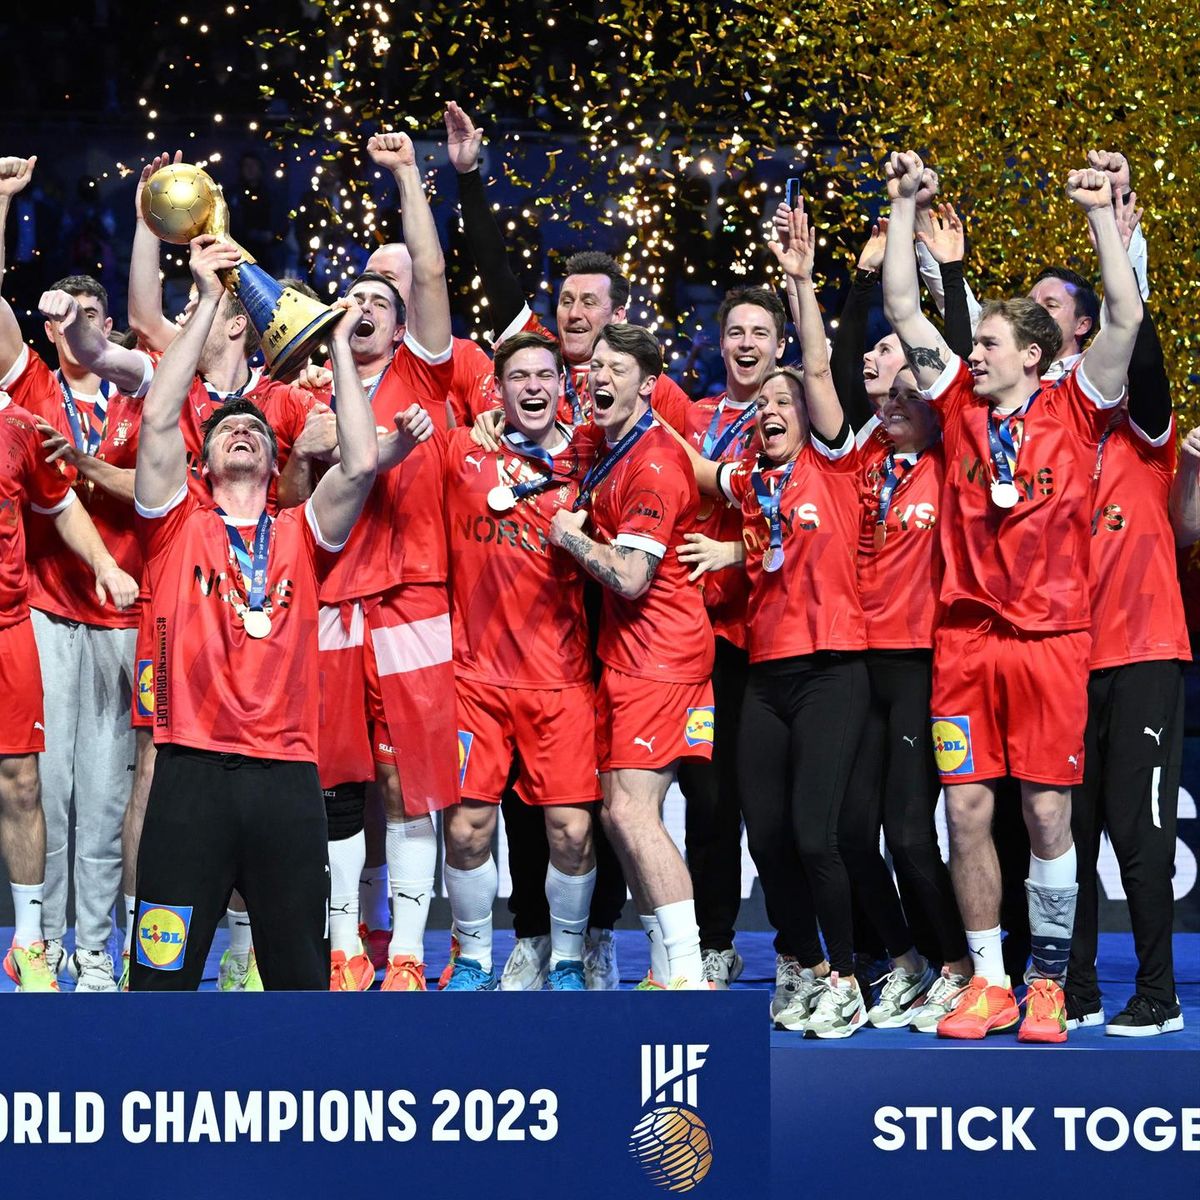 Handball-WM 2023 - Dänemarks Könige in Stockholm gekrönt Siegerehrung nach Finalkrimi gegen Frankreich - Handball Video